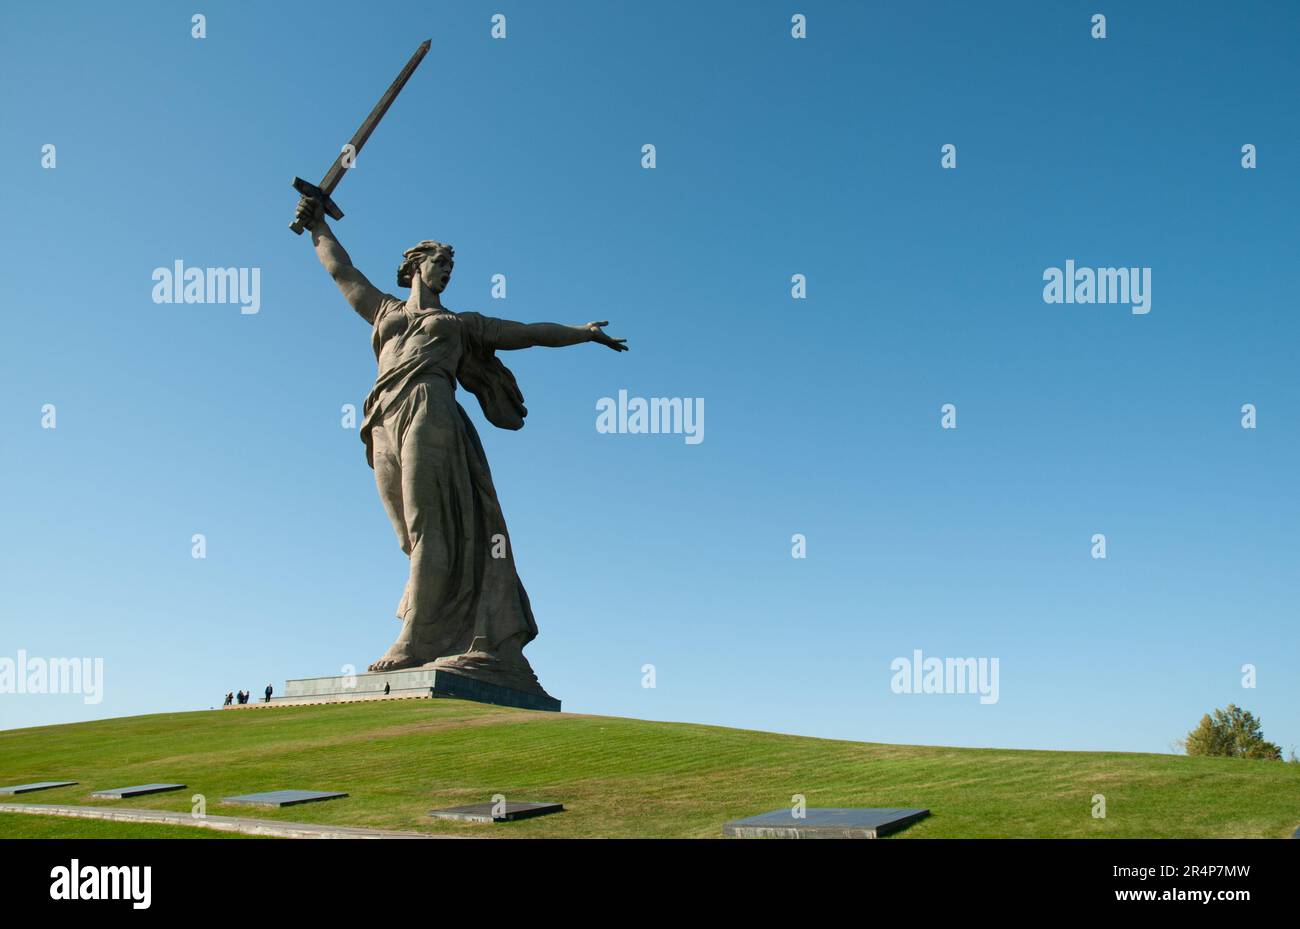 'La Patria chiama', lo stato più alto del mondo, si trova a Mamayev Kurgan, Volgograd (ex Stalingrad) nella federazione russa. Esso commemora la battaglia di Stalingrado, combattuta tra i nazisti e l'Unione Sovietica nella Grande Guerra Patriottica, Guerra Mondiale 2 Foto Stock